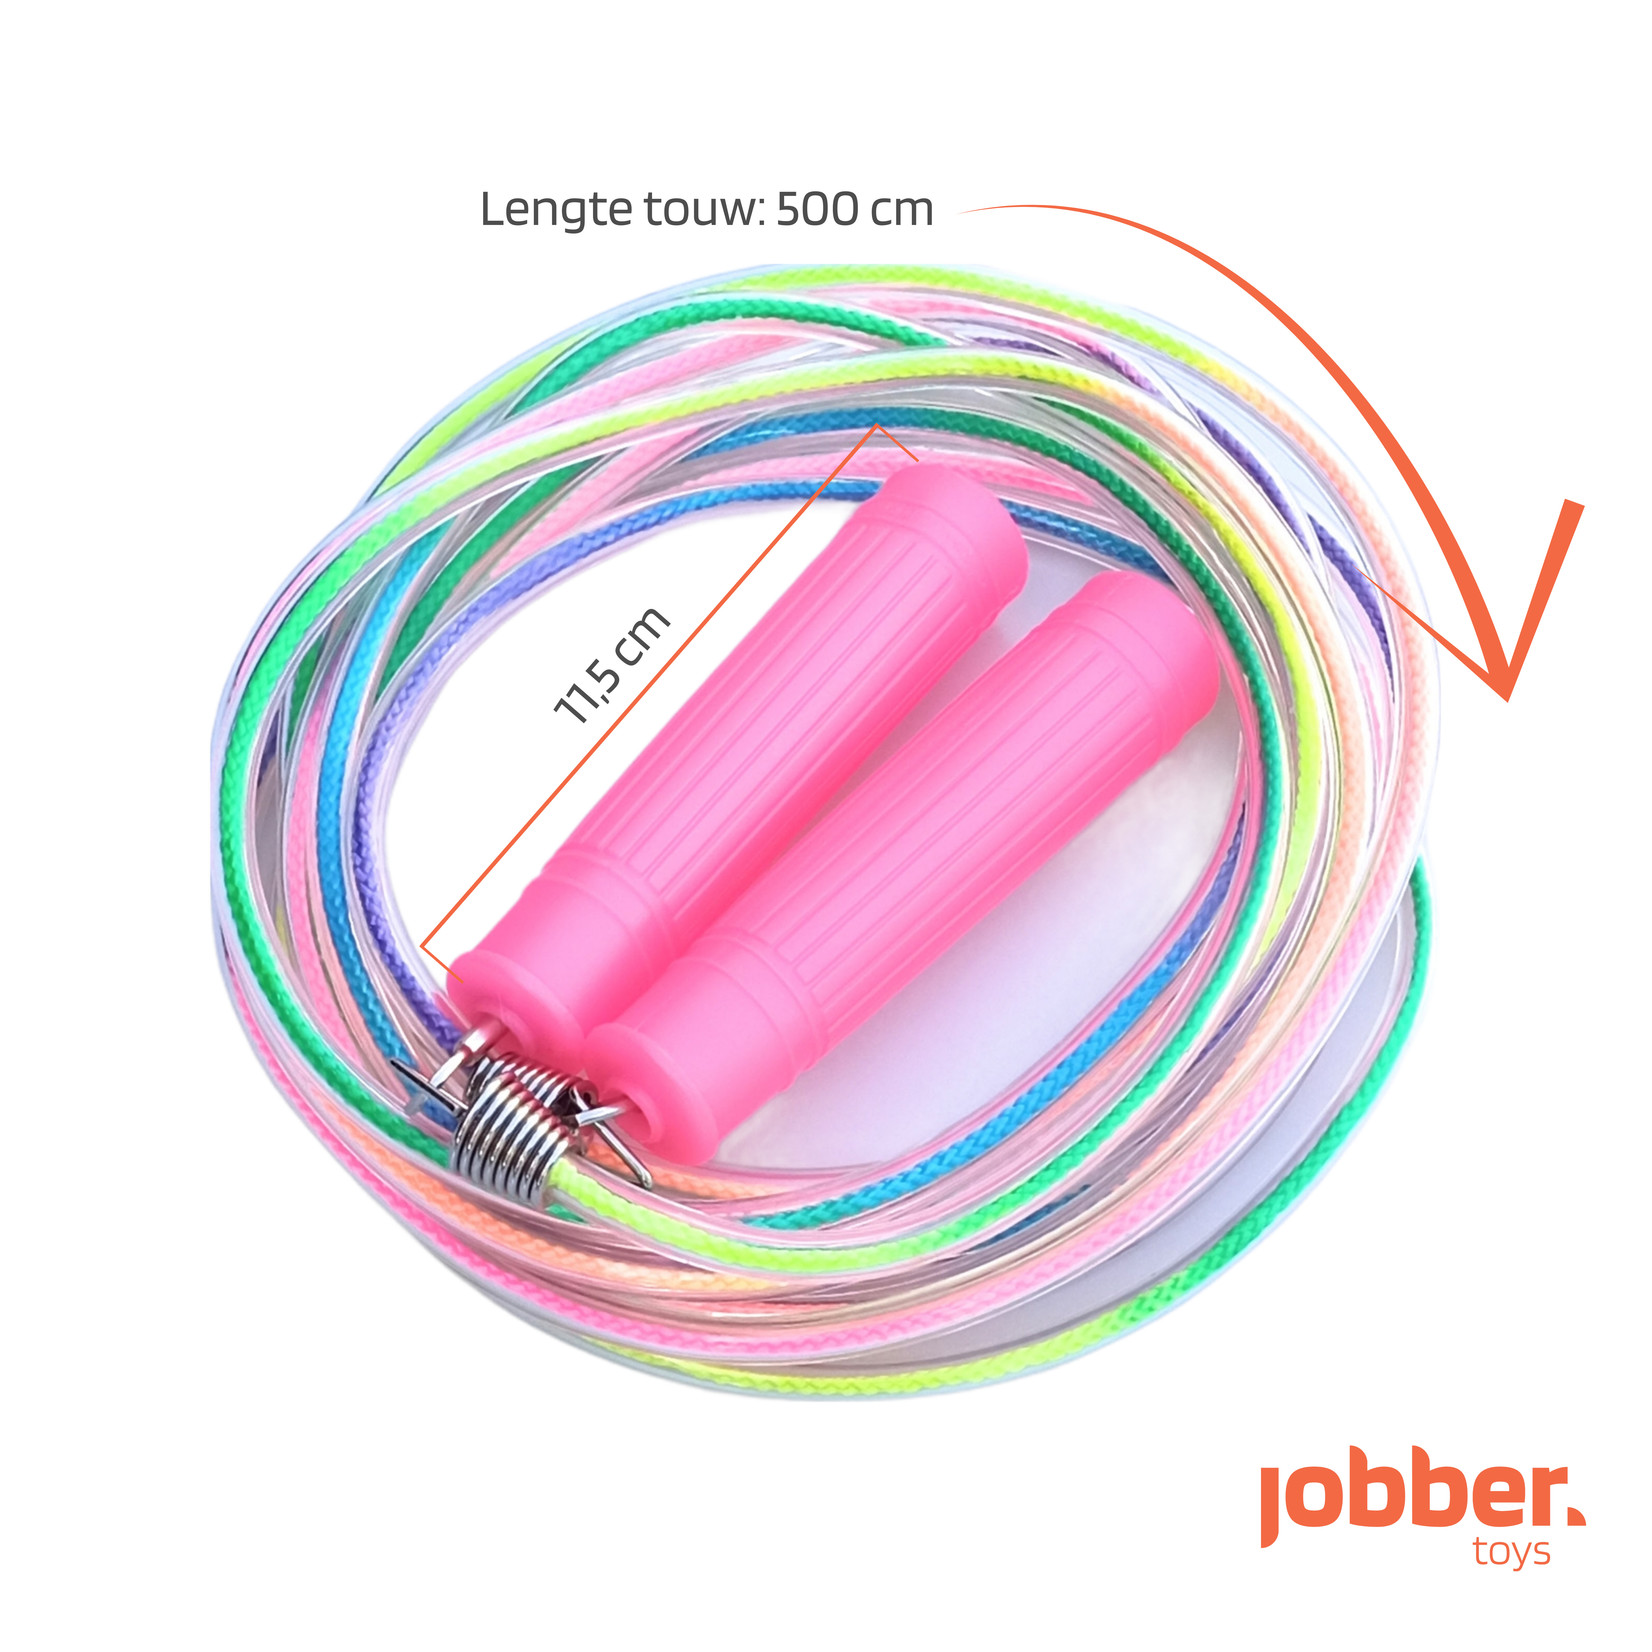 Jobber Ropes kids Jobber Ropes – Lang springtouw 5 meter regenboog